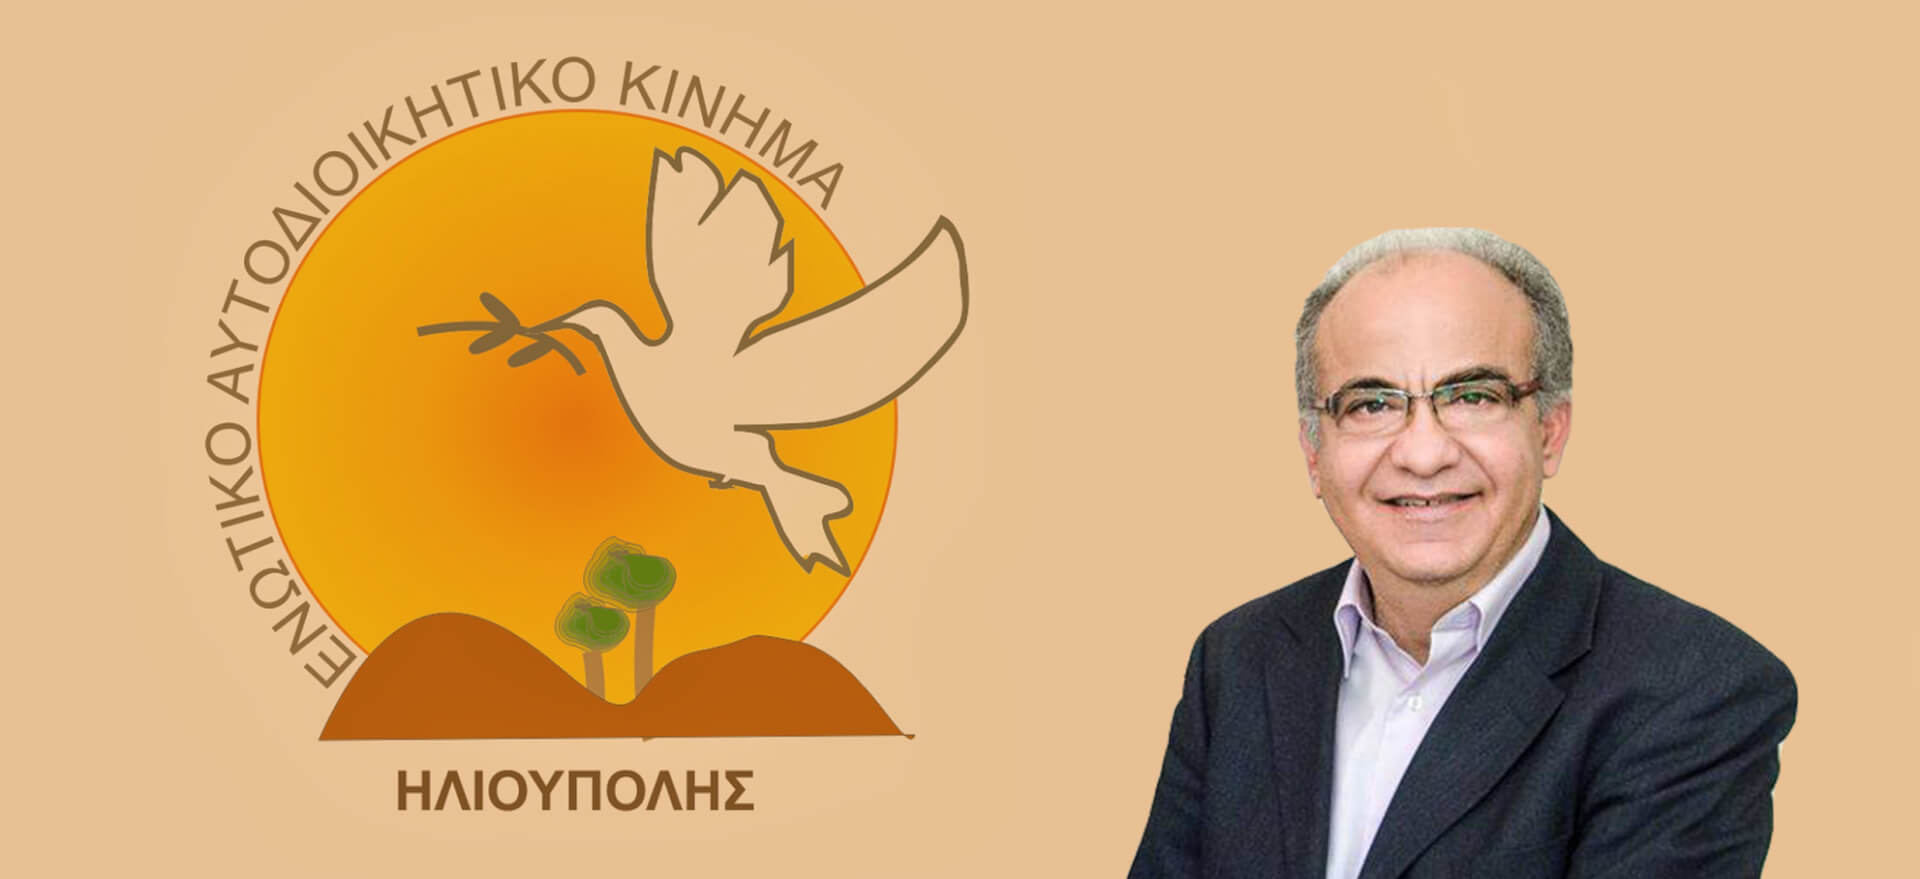 Πανταζόπουλος: “Δεν Θα Eίμαι Ξανά Υποψήφιος Δήμαρχος Ηλιούπολης”